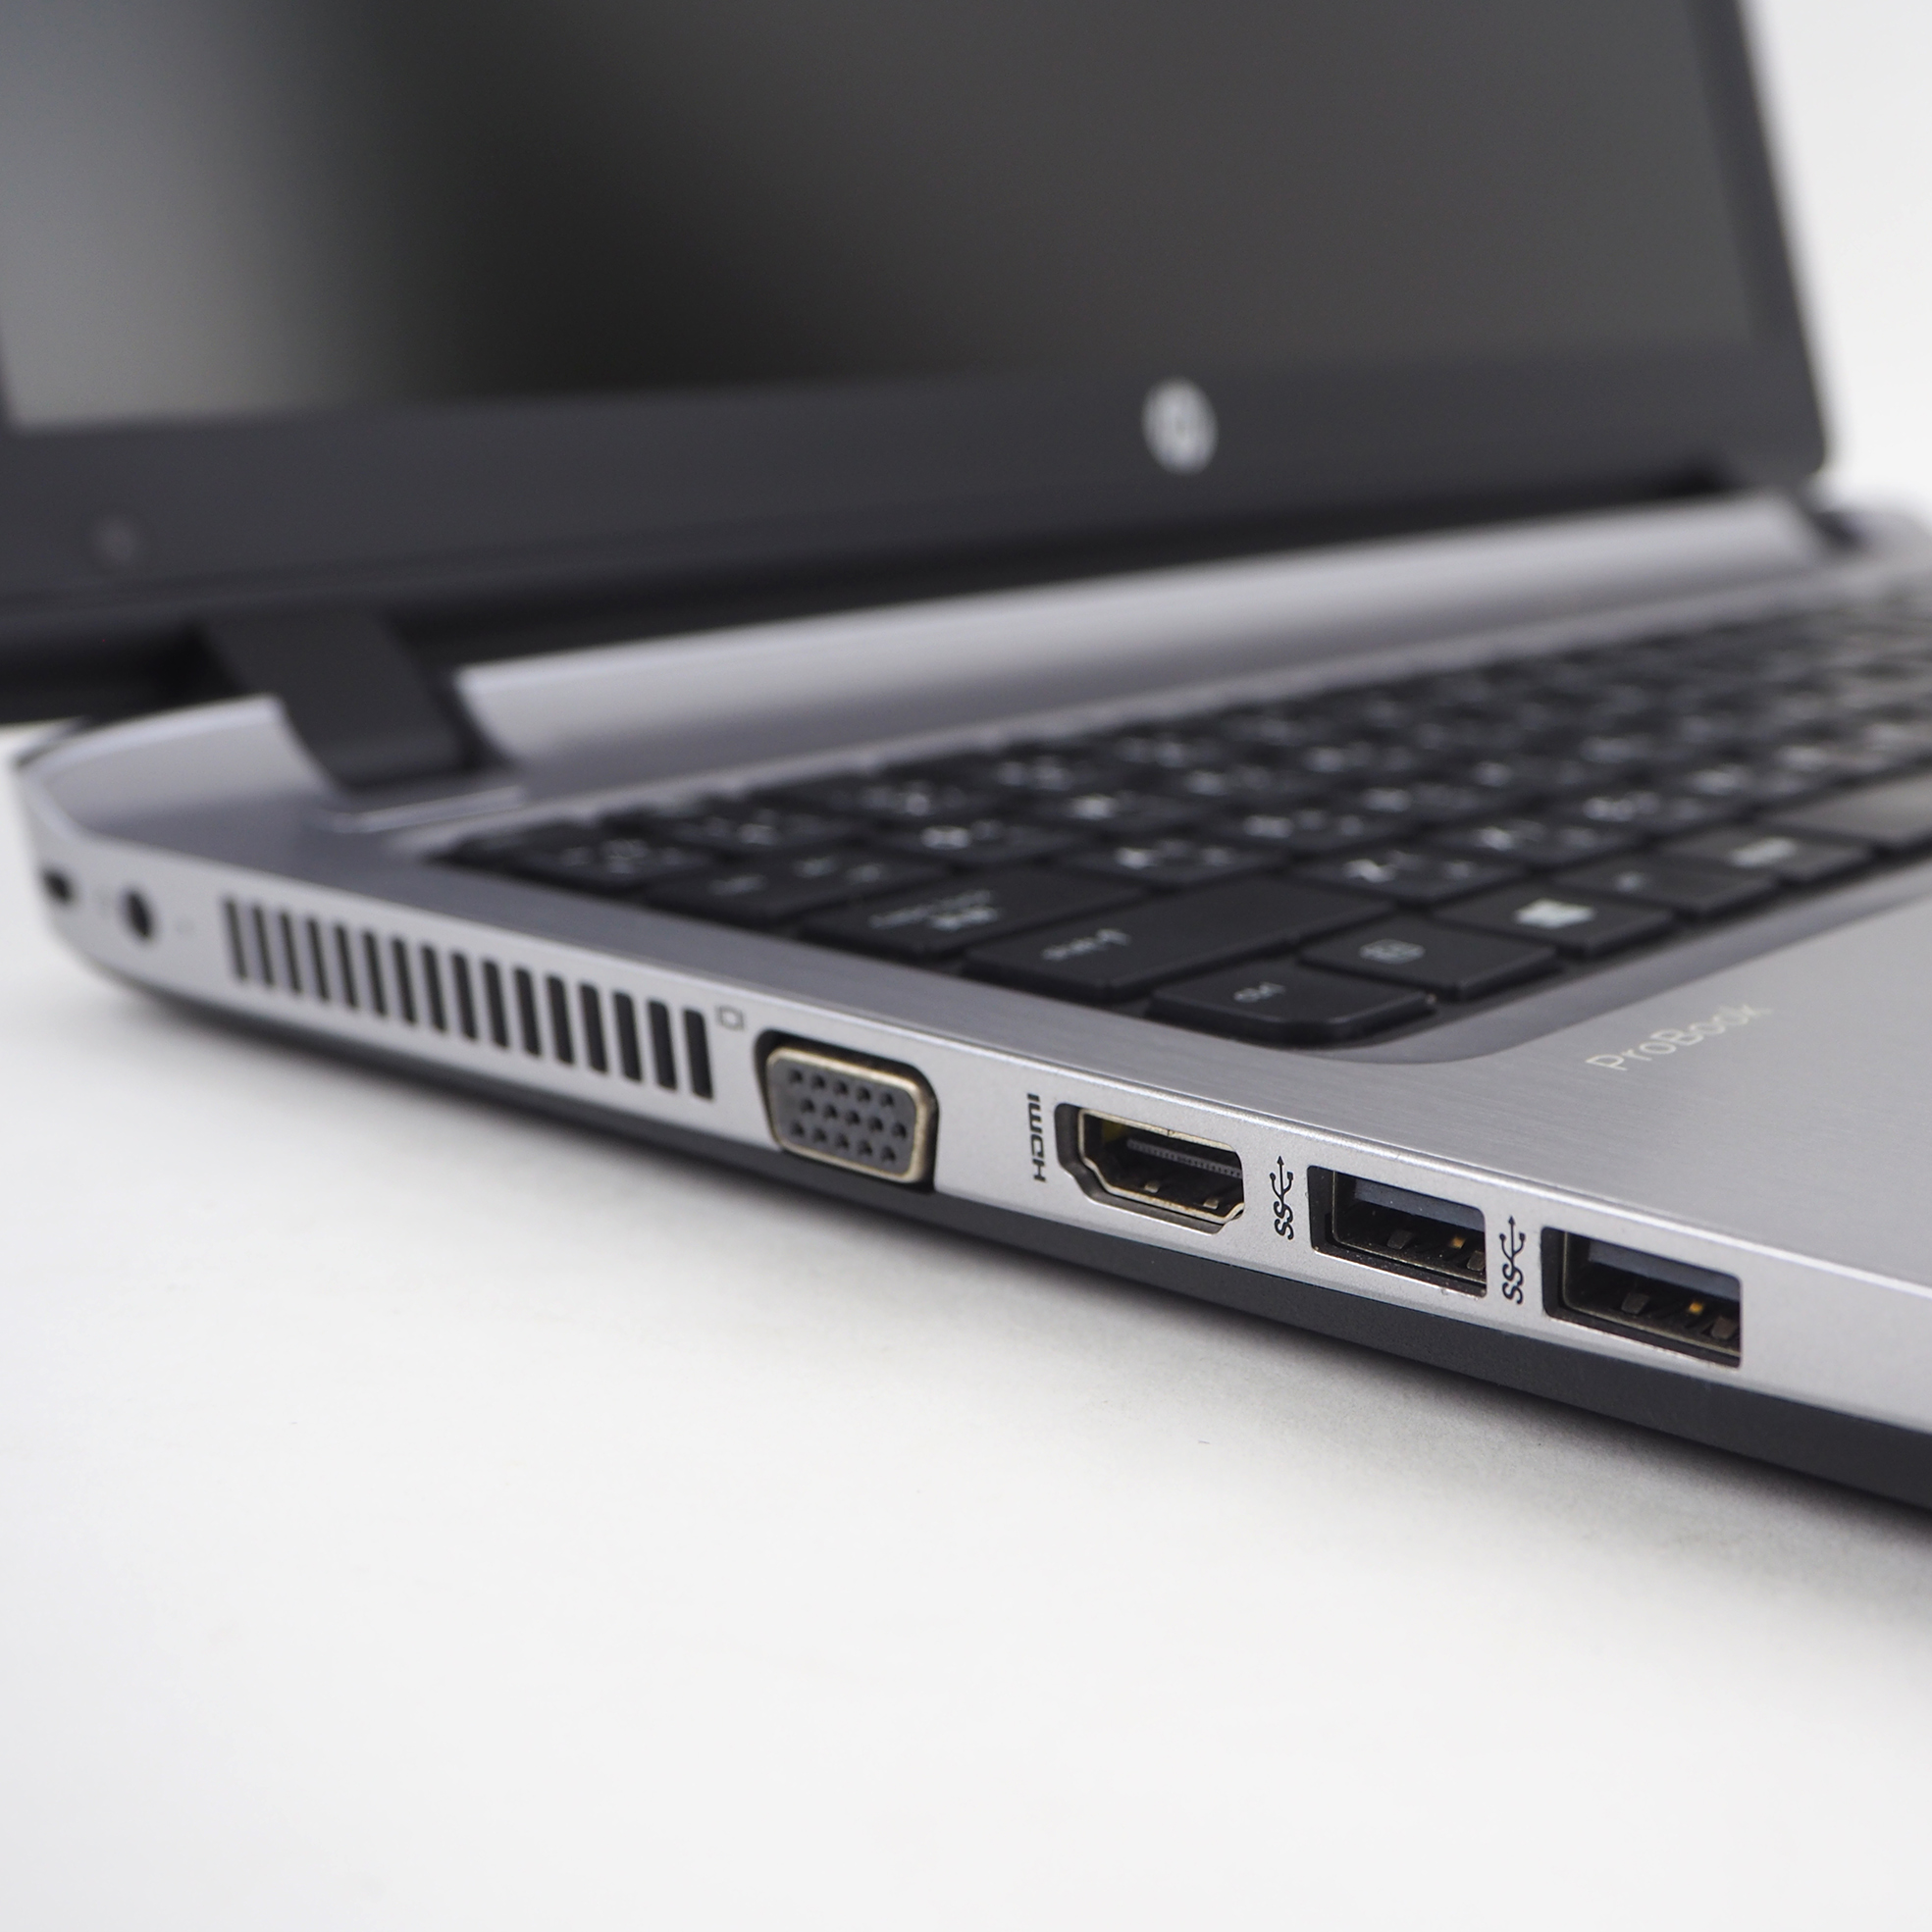 ข้อมูลเกี่ยวกับ โน๊ตบุ๊ค HP Probook 450 G3 - Core i3 GEN 6 Ram 4 GB HDD 320GB มีกล้องในตัว Refhed laptop used notebook คอมพิวเตอร์ สภาพดี มีประกัน พร้อมบริการหลังการขาย By Totalsol